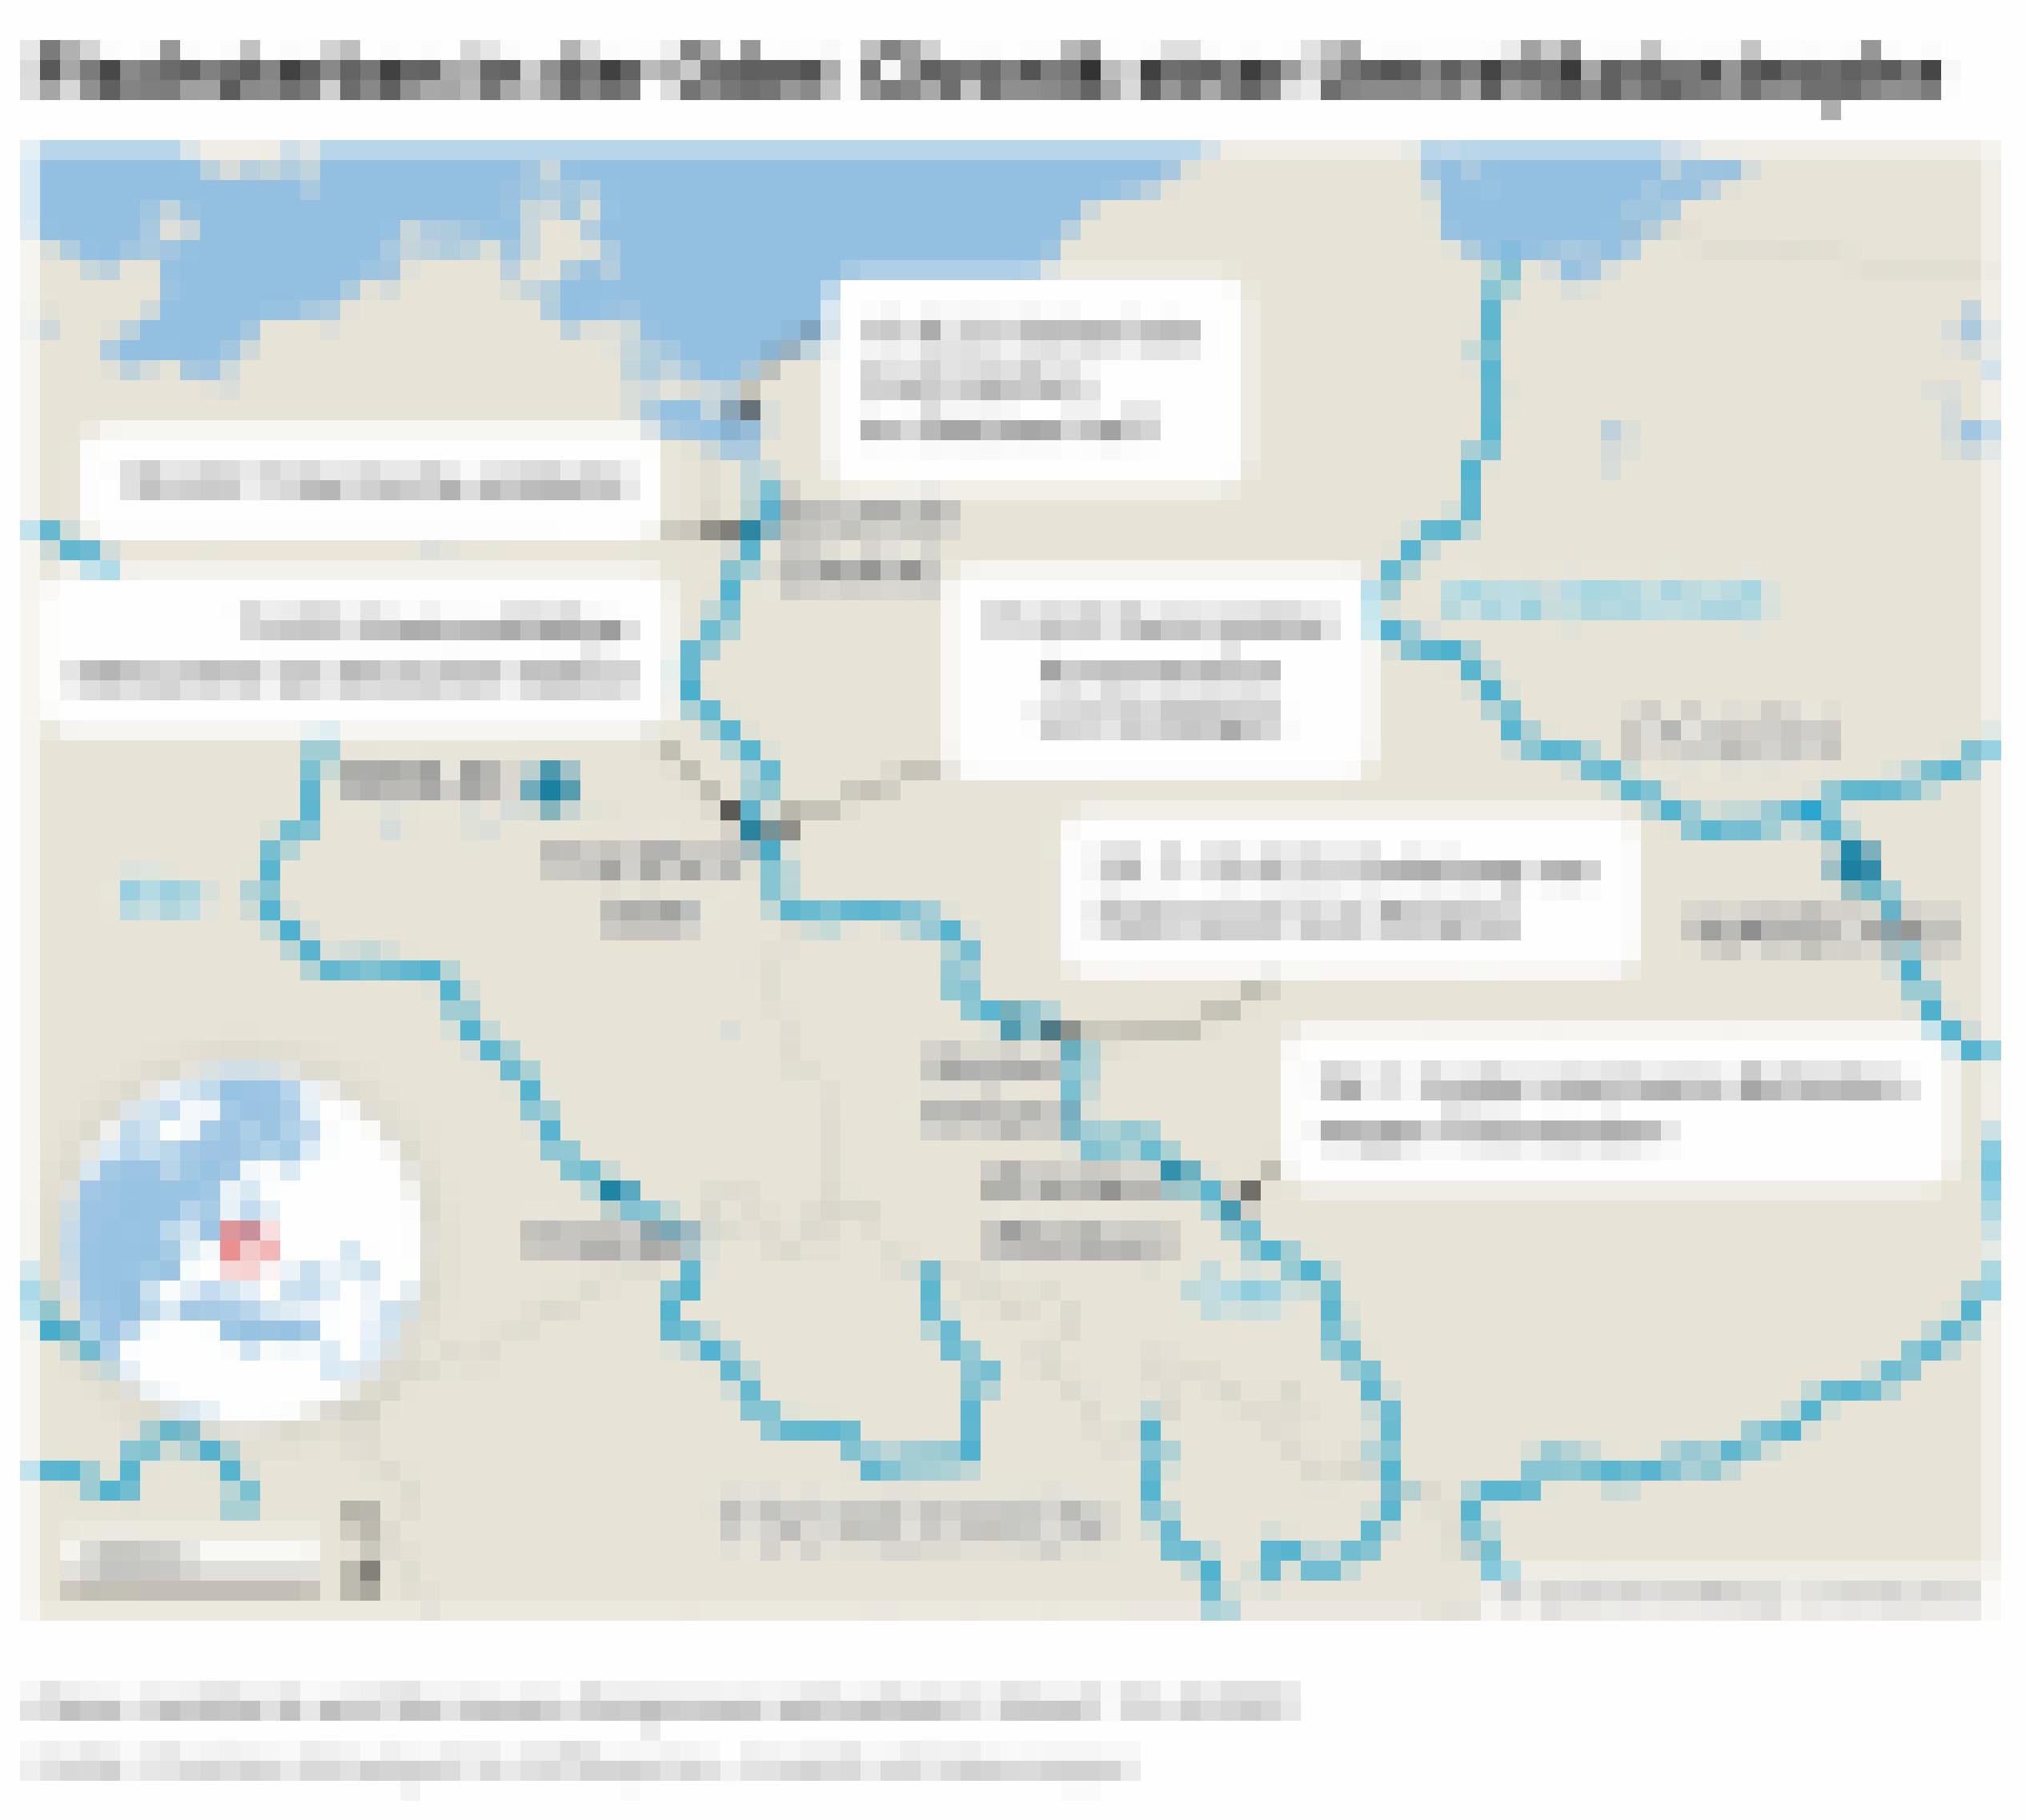 Der Fluss Oder verläuft von Tschechien über Polen entlang der deutsch-polnischen Grenze via Stettin in die Ostsee. Die Landkarte stellt wichtige Daten dar, erste Meldung von Fischsterben am 26.7. im Oberlauf, Einleitung von Salzwasser Ende Juli, erste auffällige Messwerte auf deutscher Seite am 7.8.22